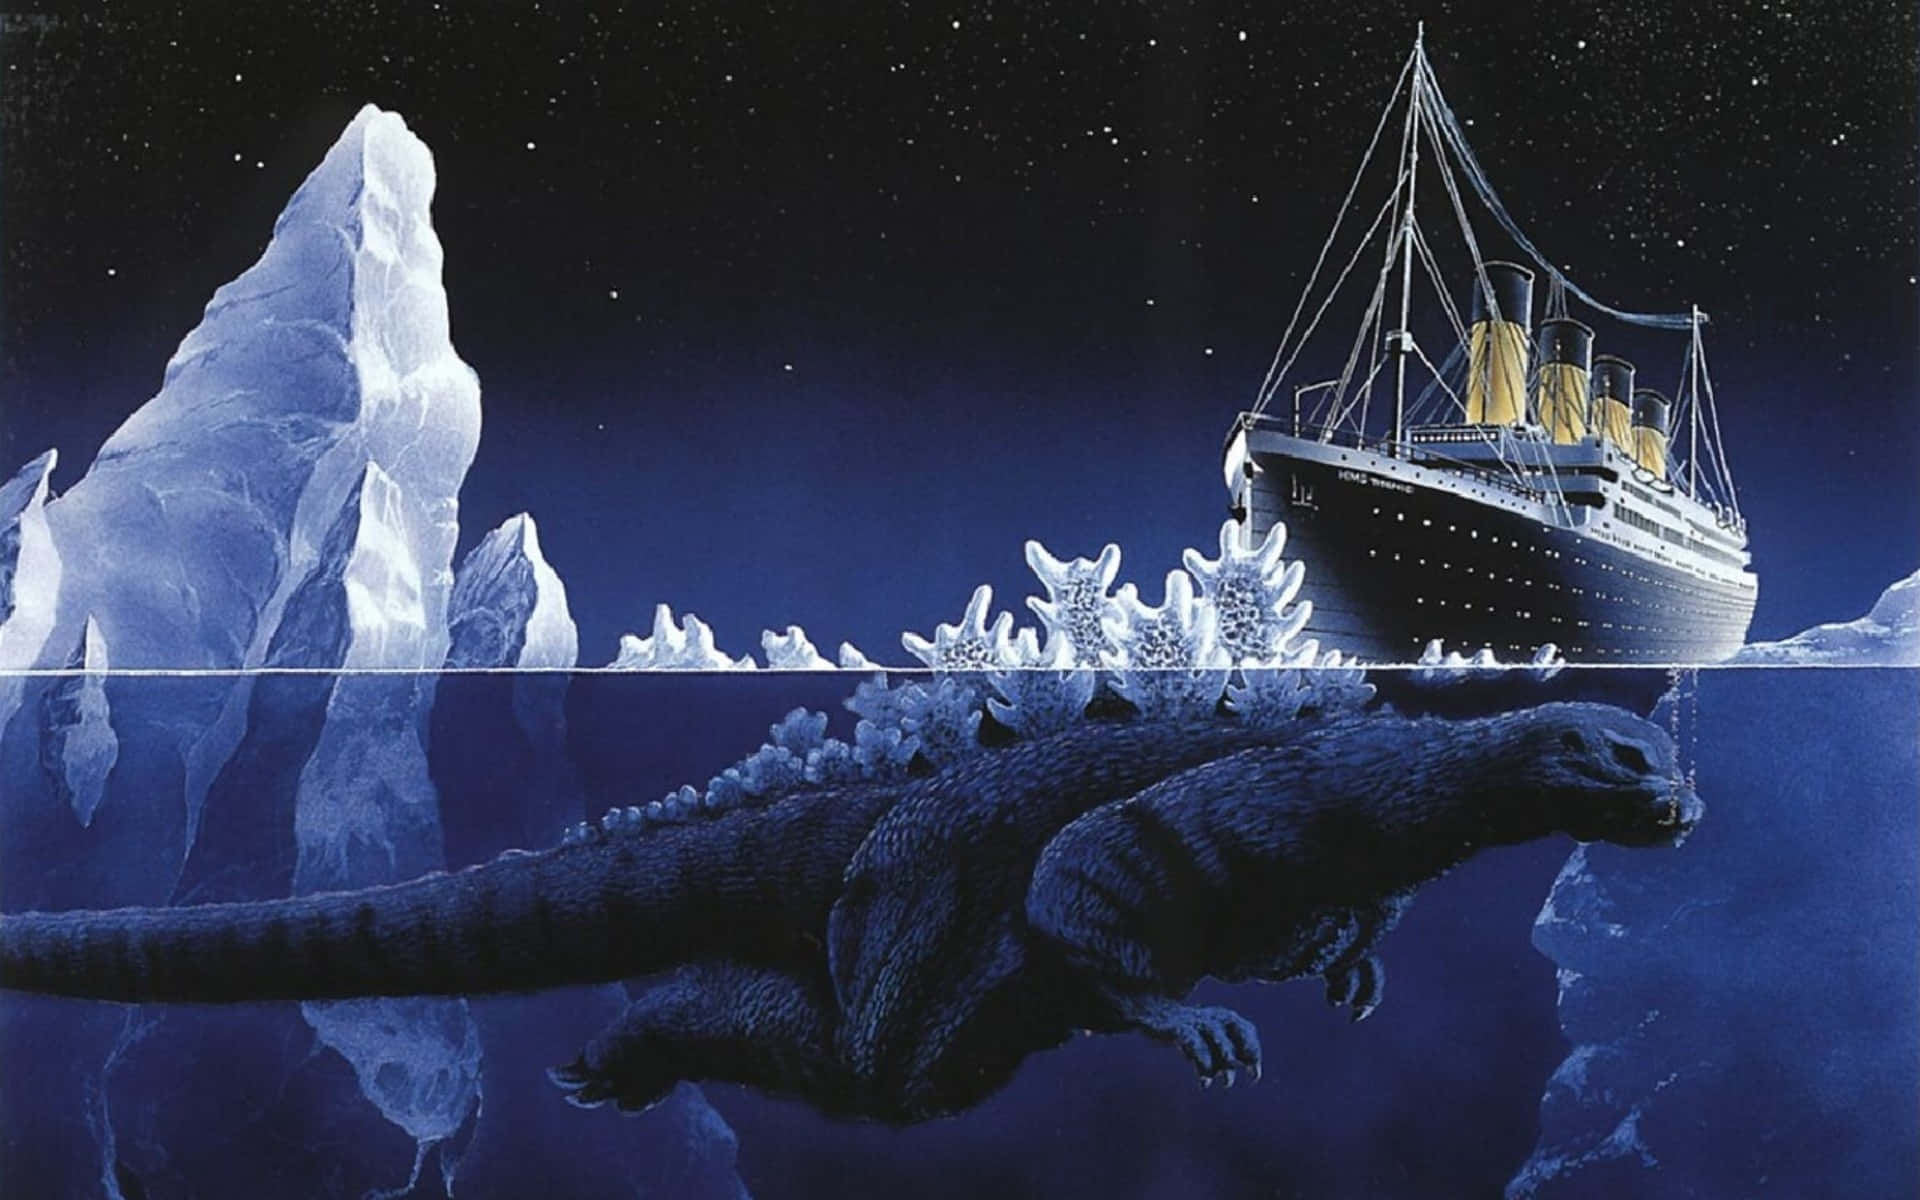 Godzilla And The Titanic